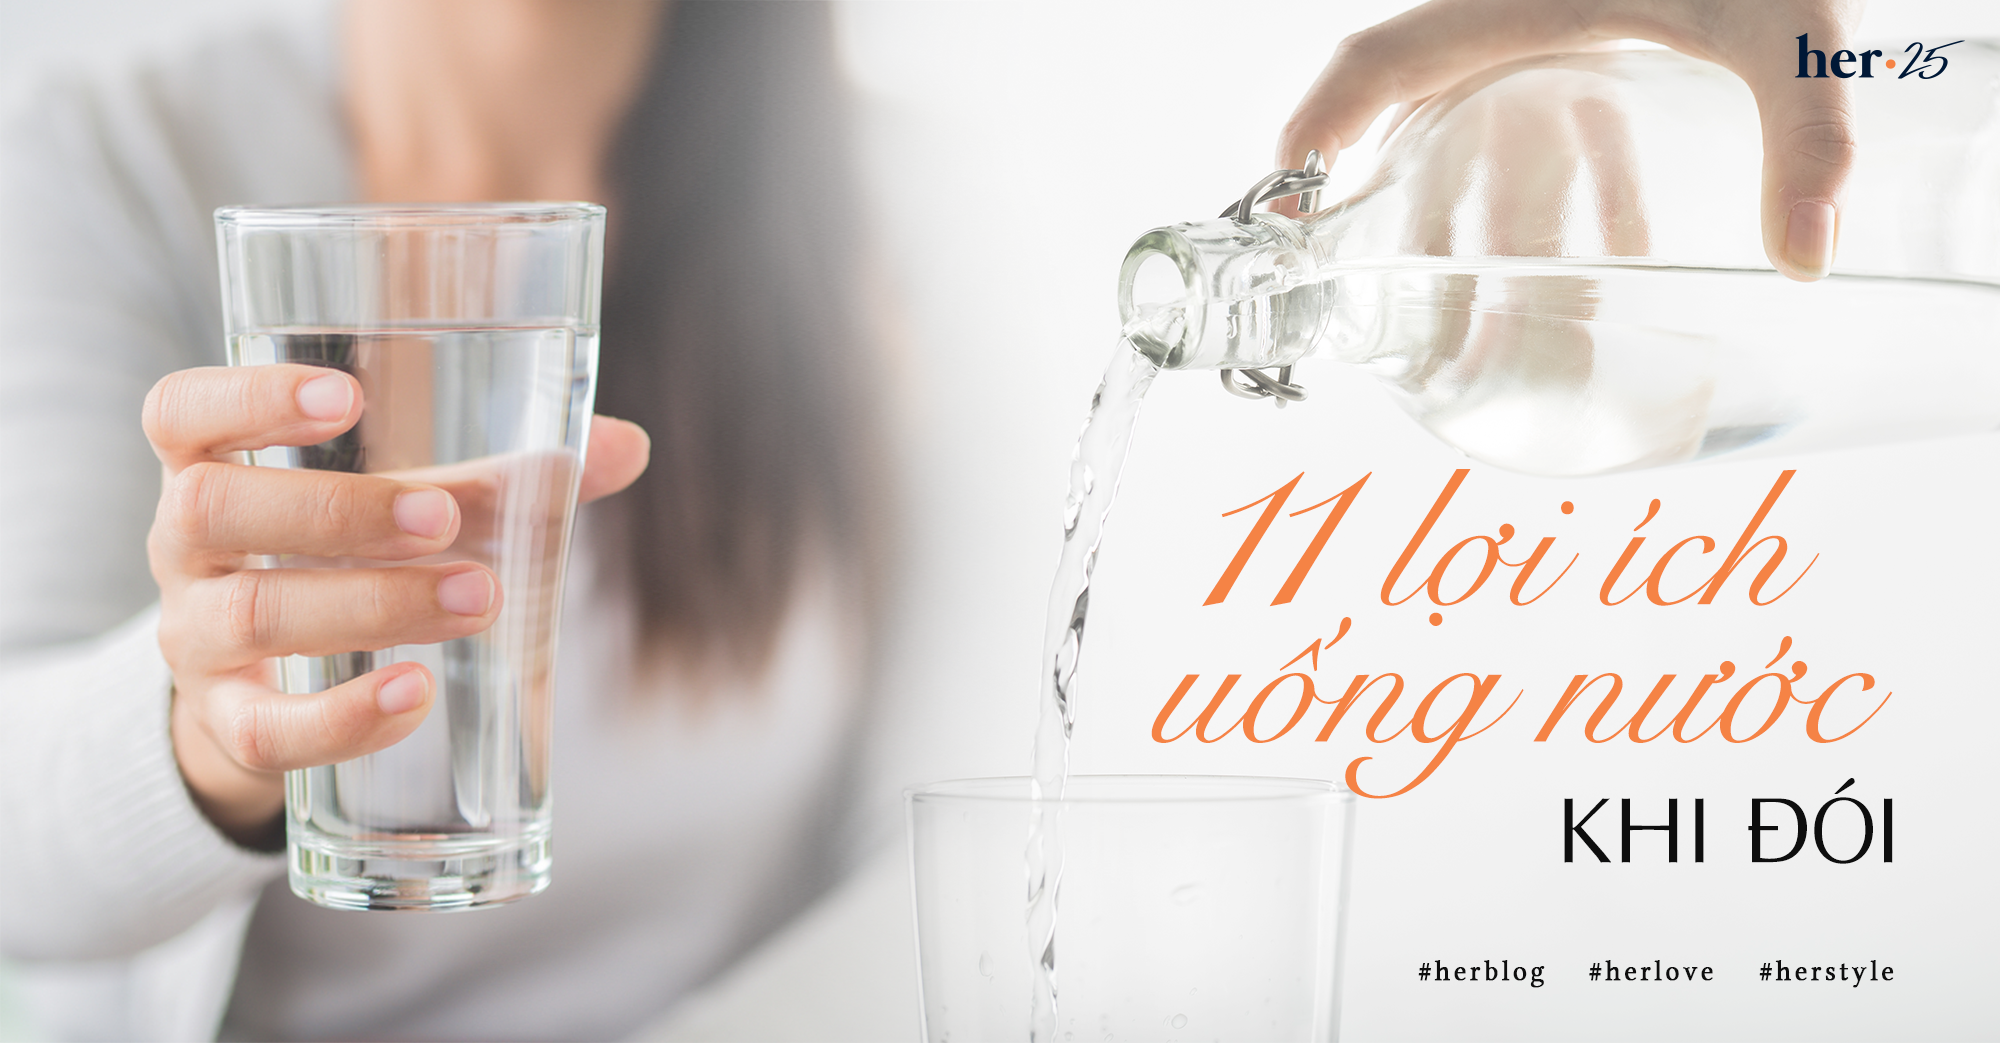 11 lợi ích uống nước khi đói